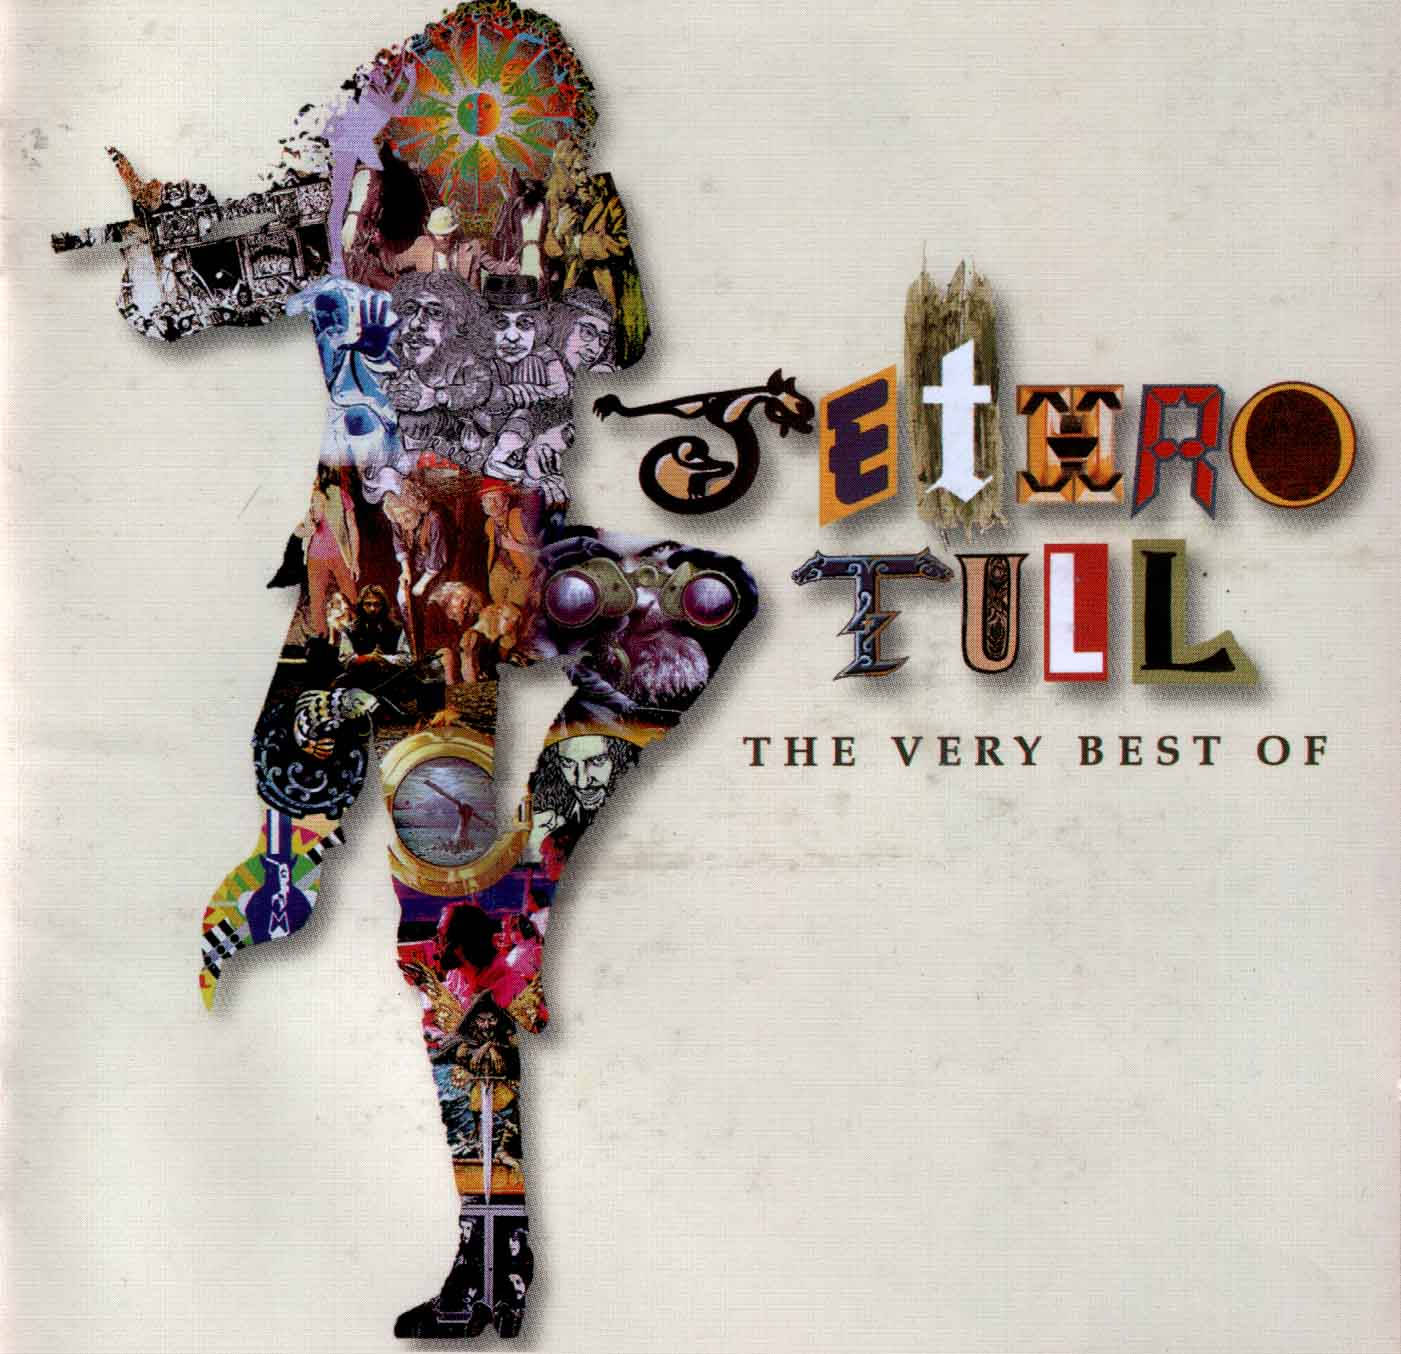 The Very Best Of Jethro Tull Album Cover Illustration Wallpaper